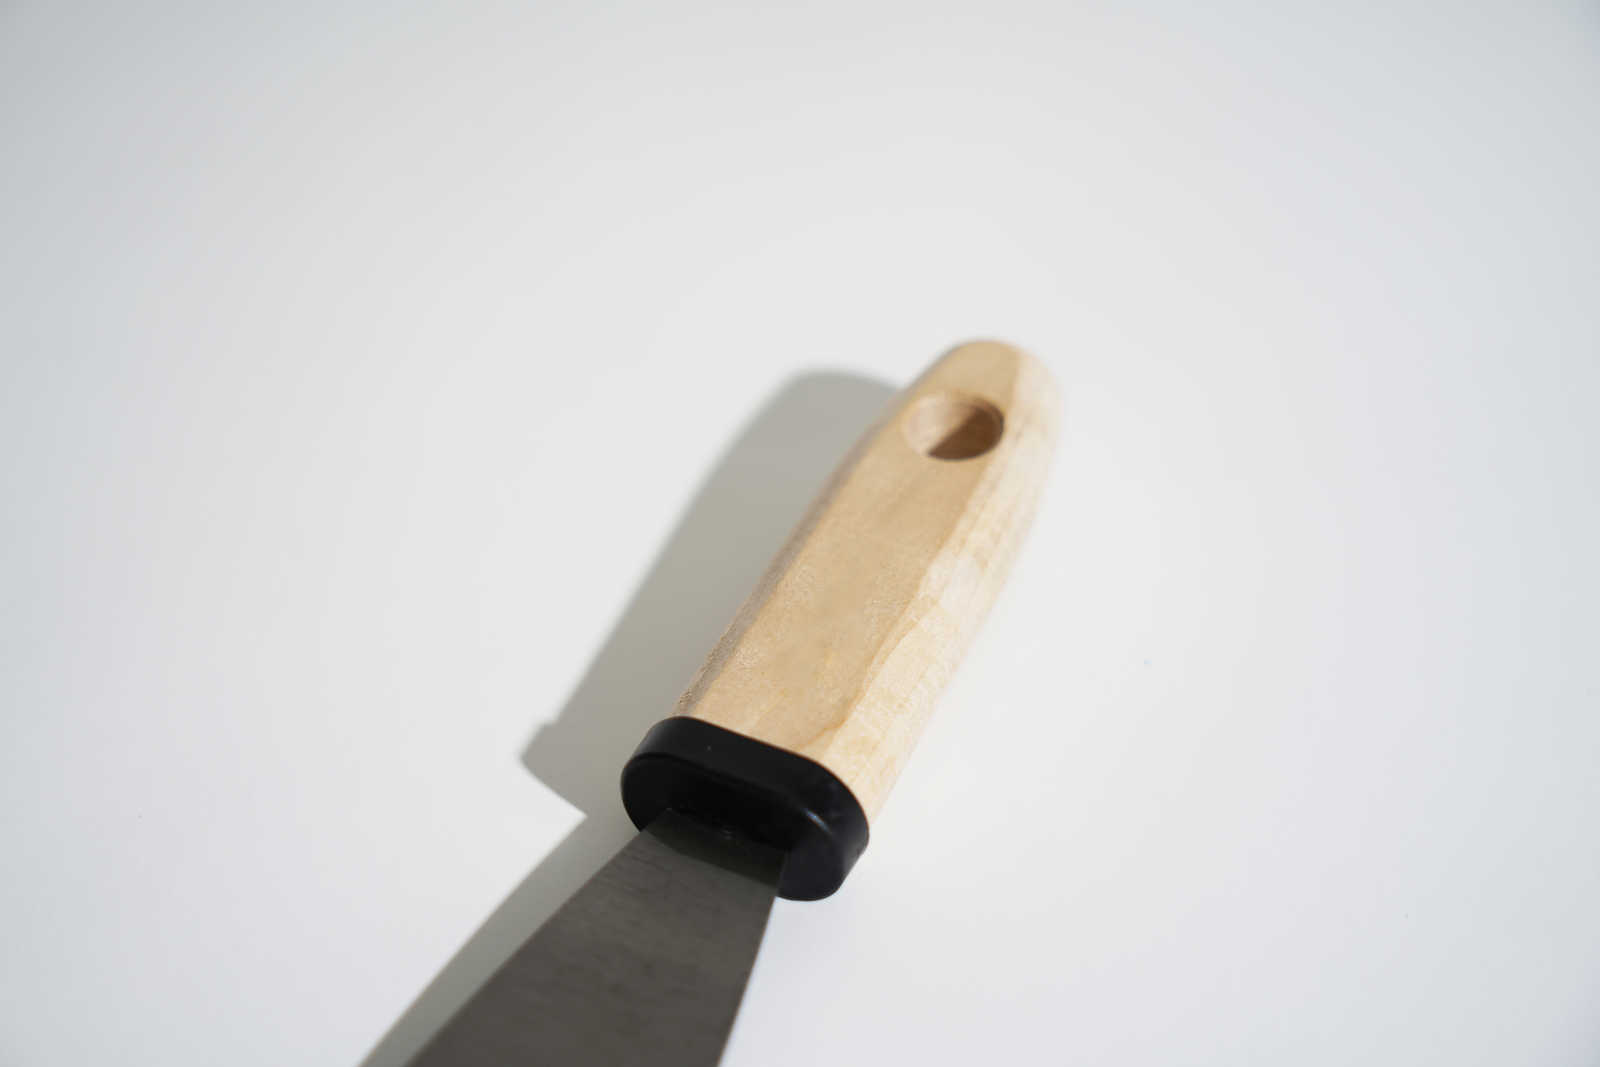             Malerspachtel 40mm mit flexiblem Stahlblatt & Holzgriff
        